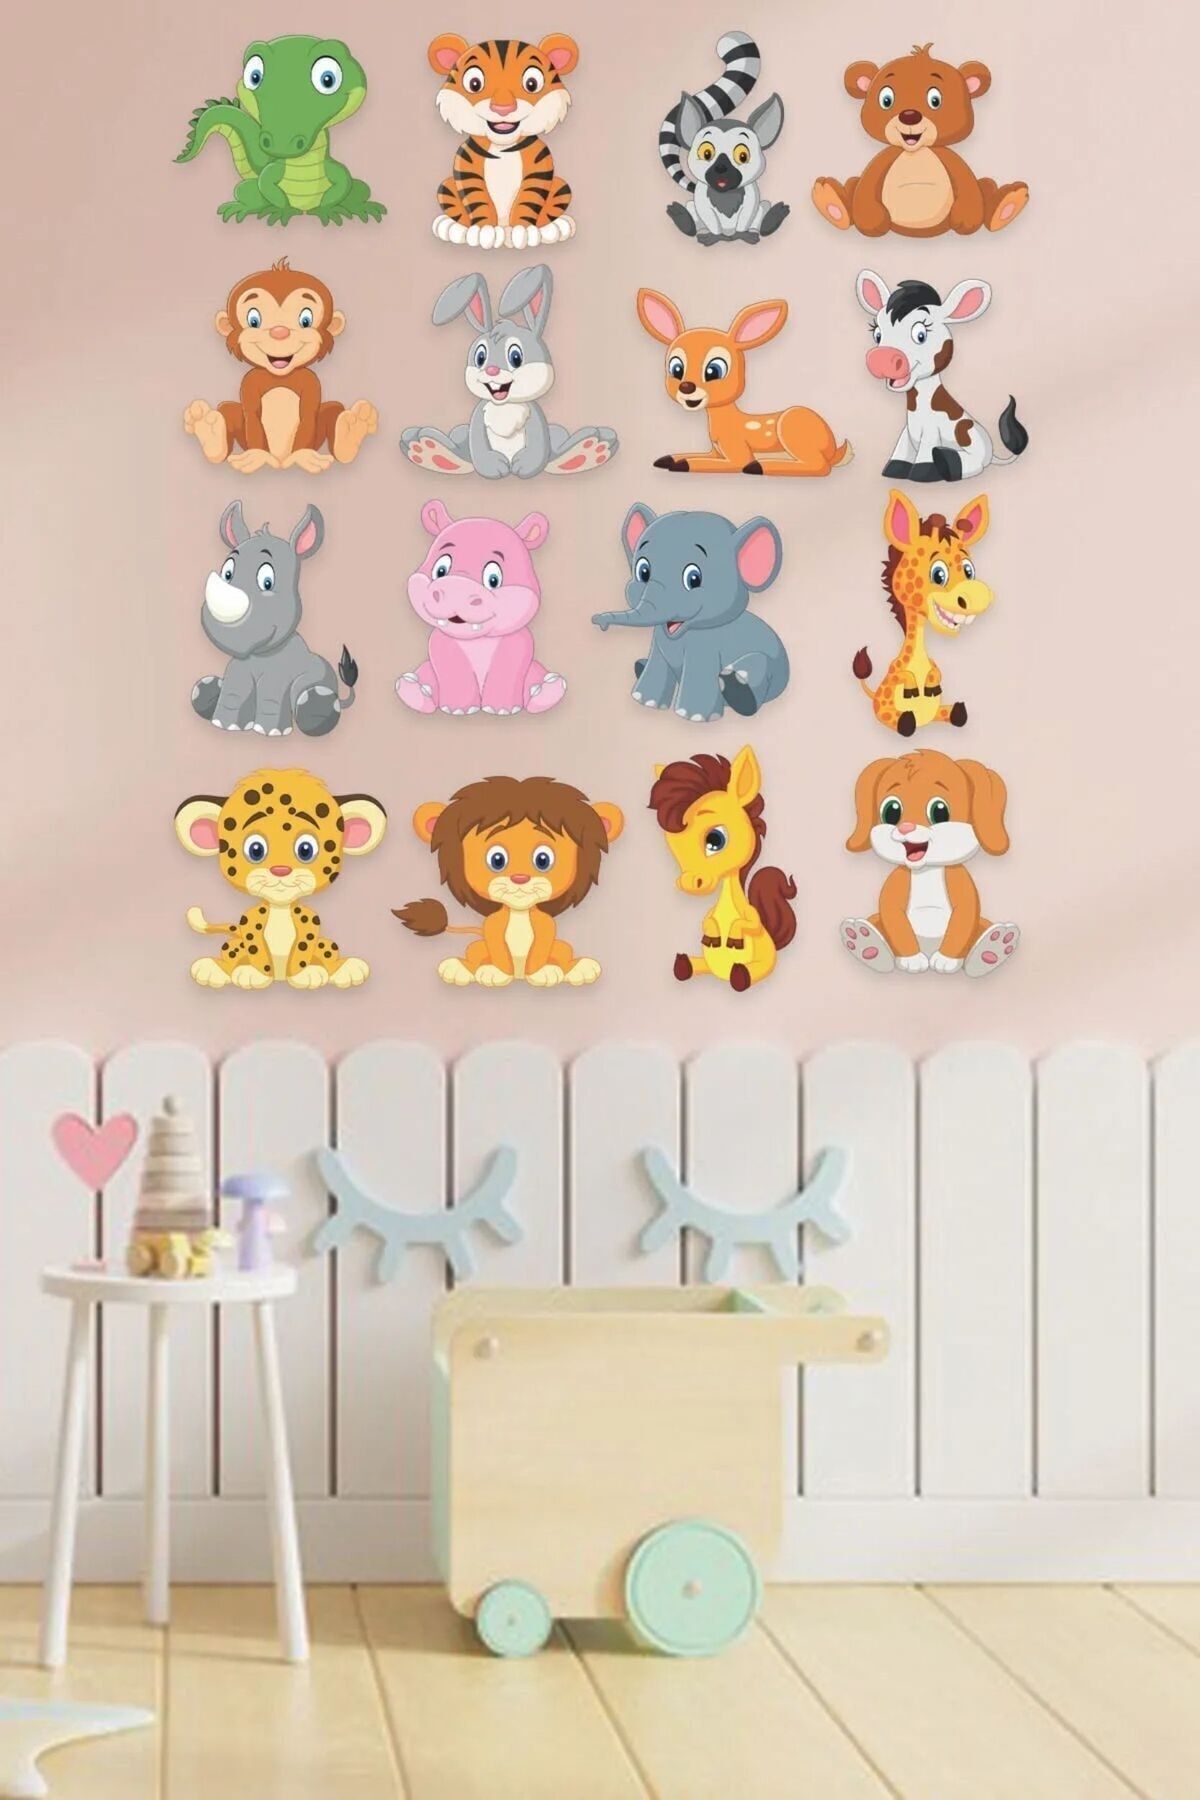 Göktuğ Подарочный набор наклеек на стену с милыми крошечными животными для детской комнаты 35x50 см goktuğ тридцатьbeş elii